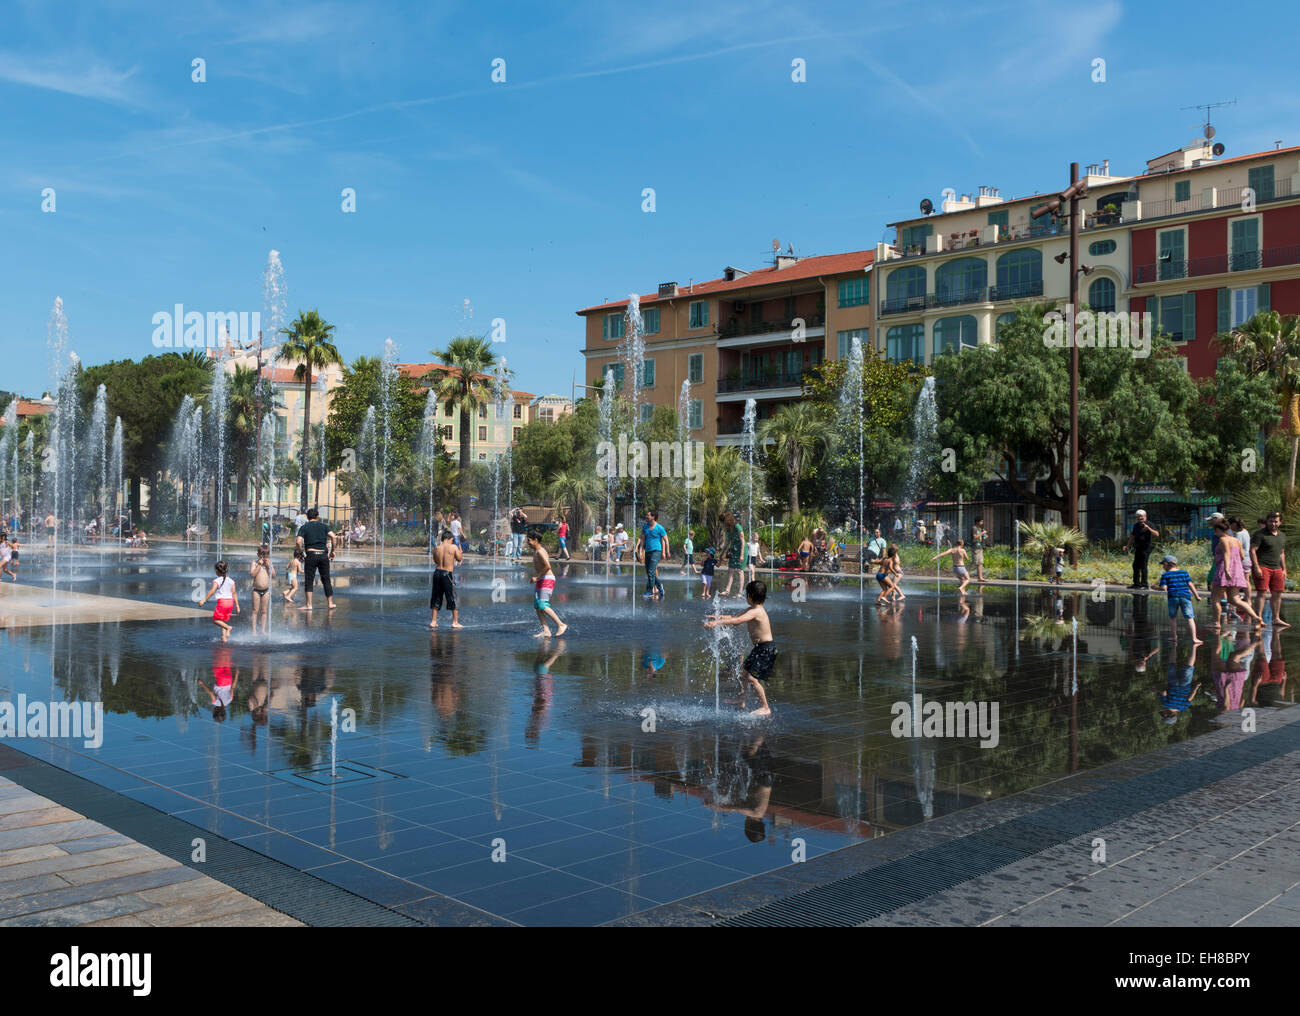 Nizza, Frankreich, Europa - Promenade du Paillon Spiegel Springbrunnen im Zentrum Stadt mit Menschen im Sommer Stockfoto